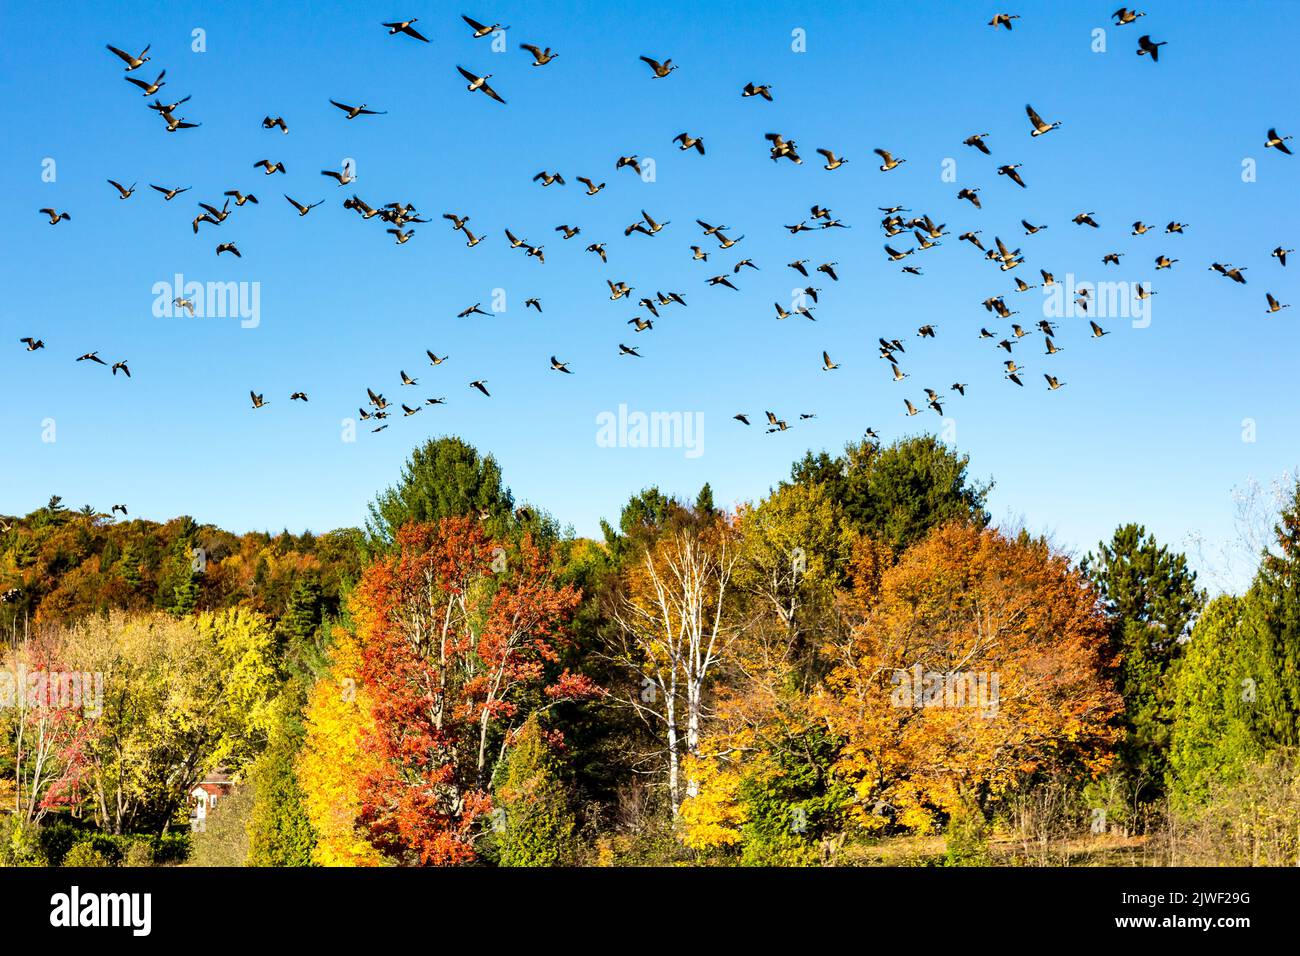 Groupe d'oies du Canada volant en formation. Paysage d'automne. Migration des oiseaux Banque D'Images